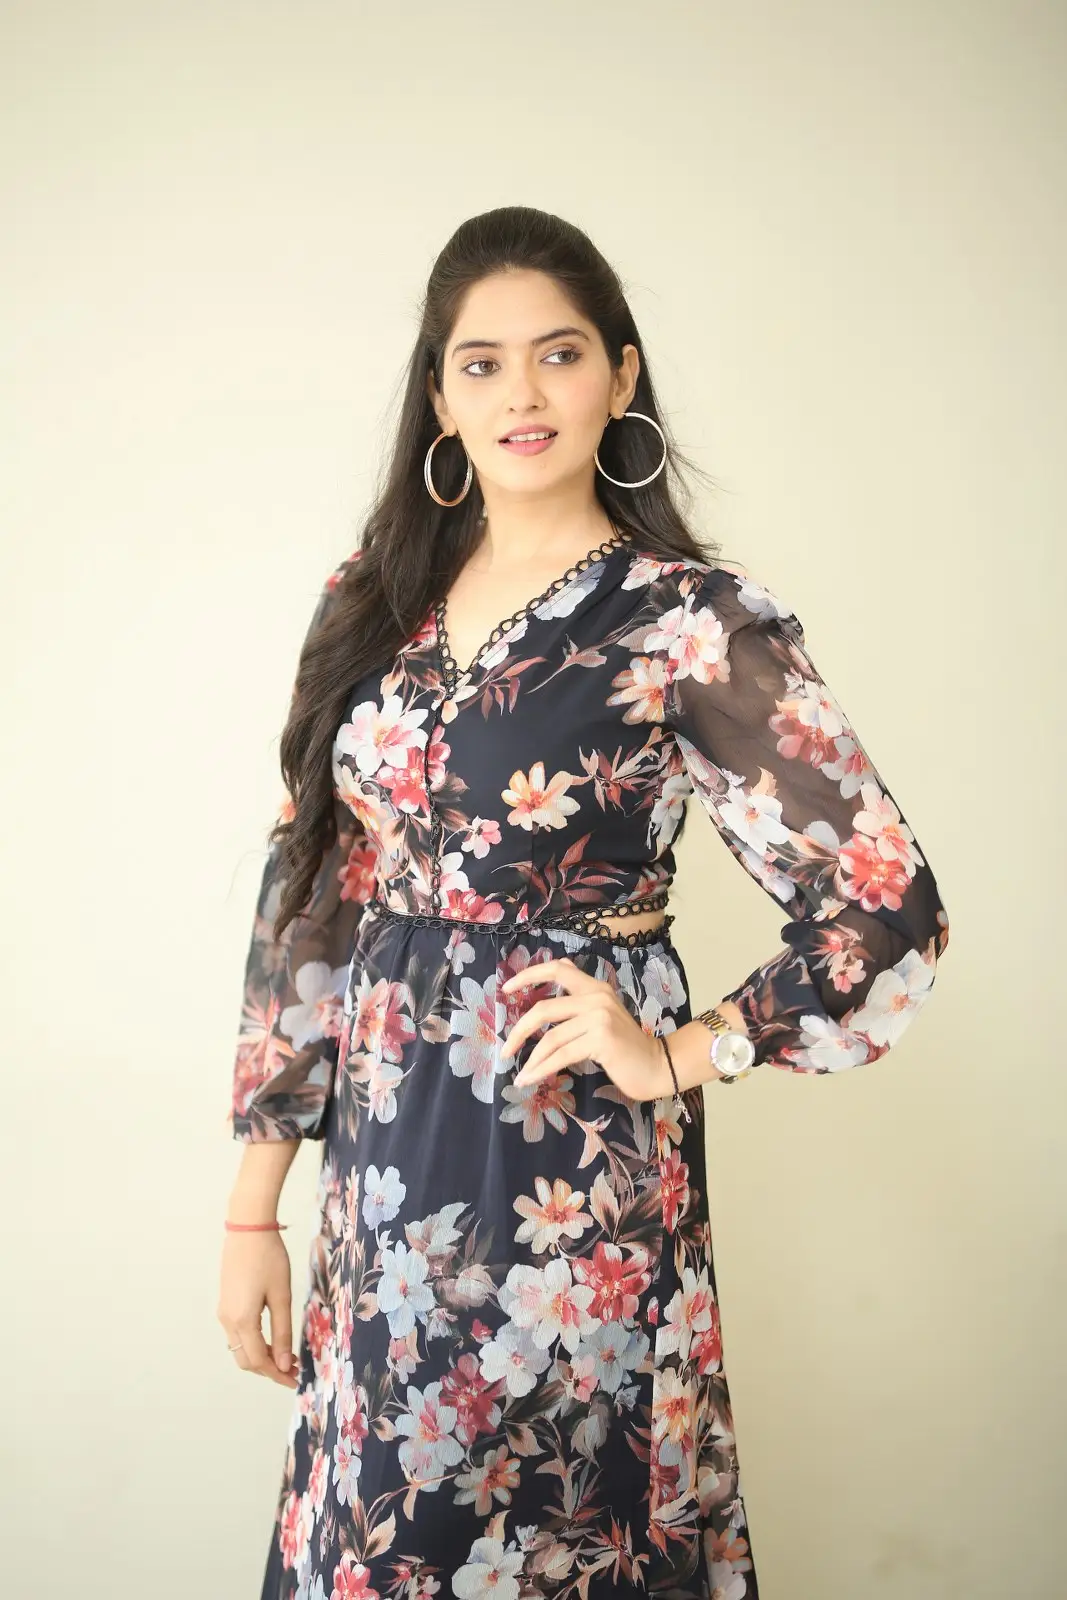 Tamil Actress Ayraa photoshoot at Atharva movie promotions